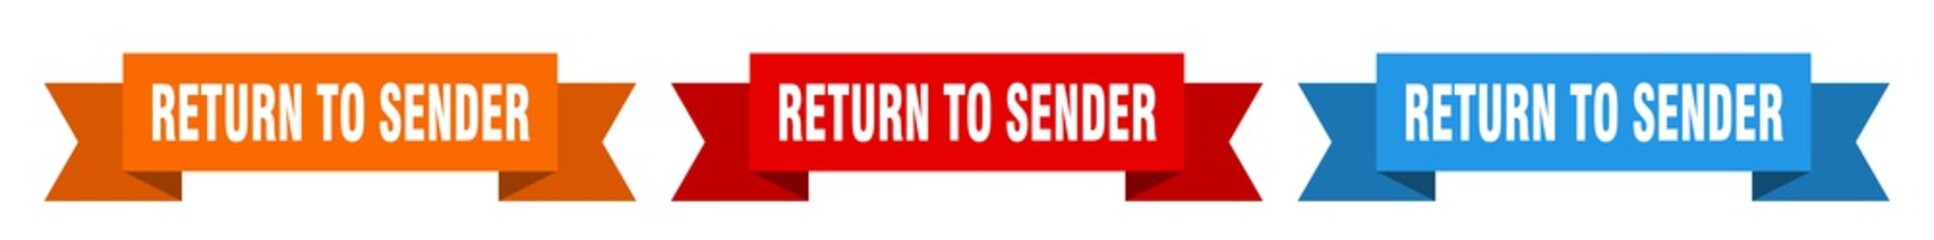 return to sender ribbon. return to sender isolated paper sign. banner